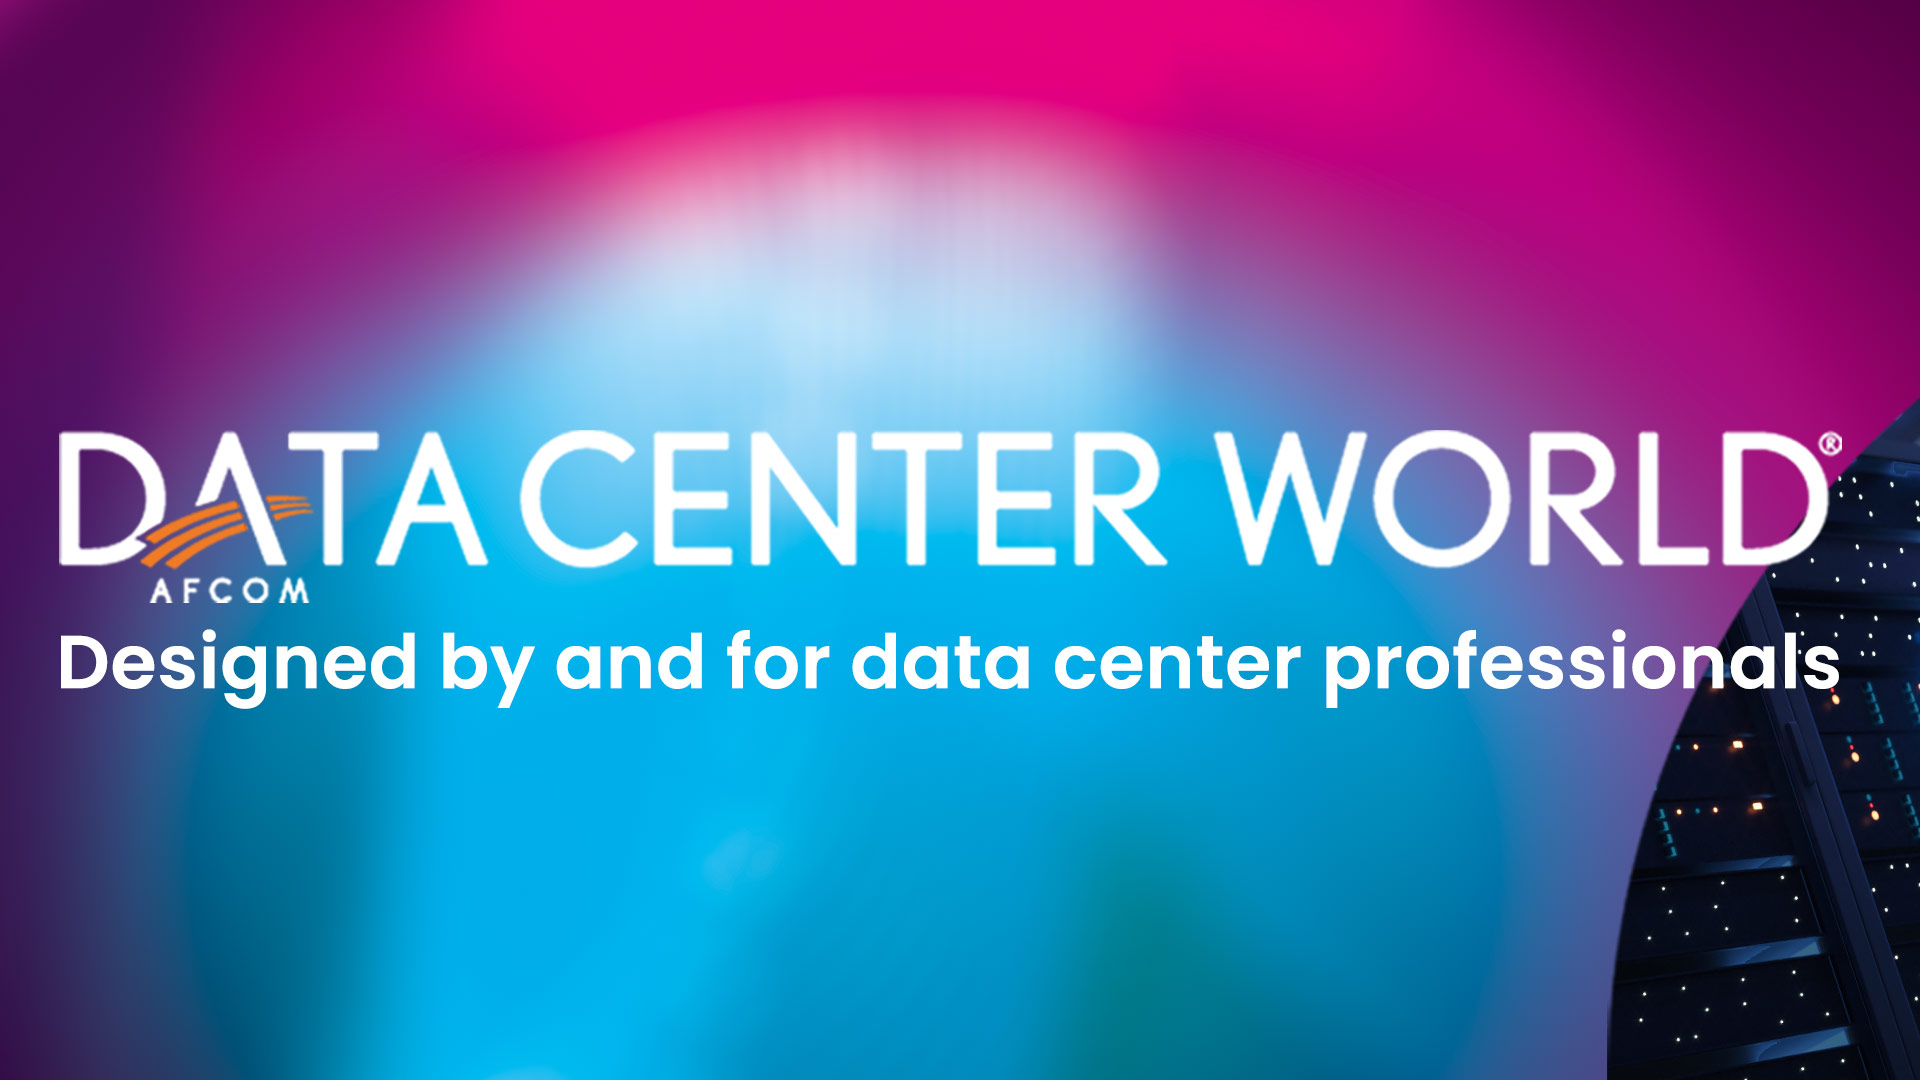 (c) Datacenterworld.com